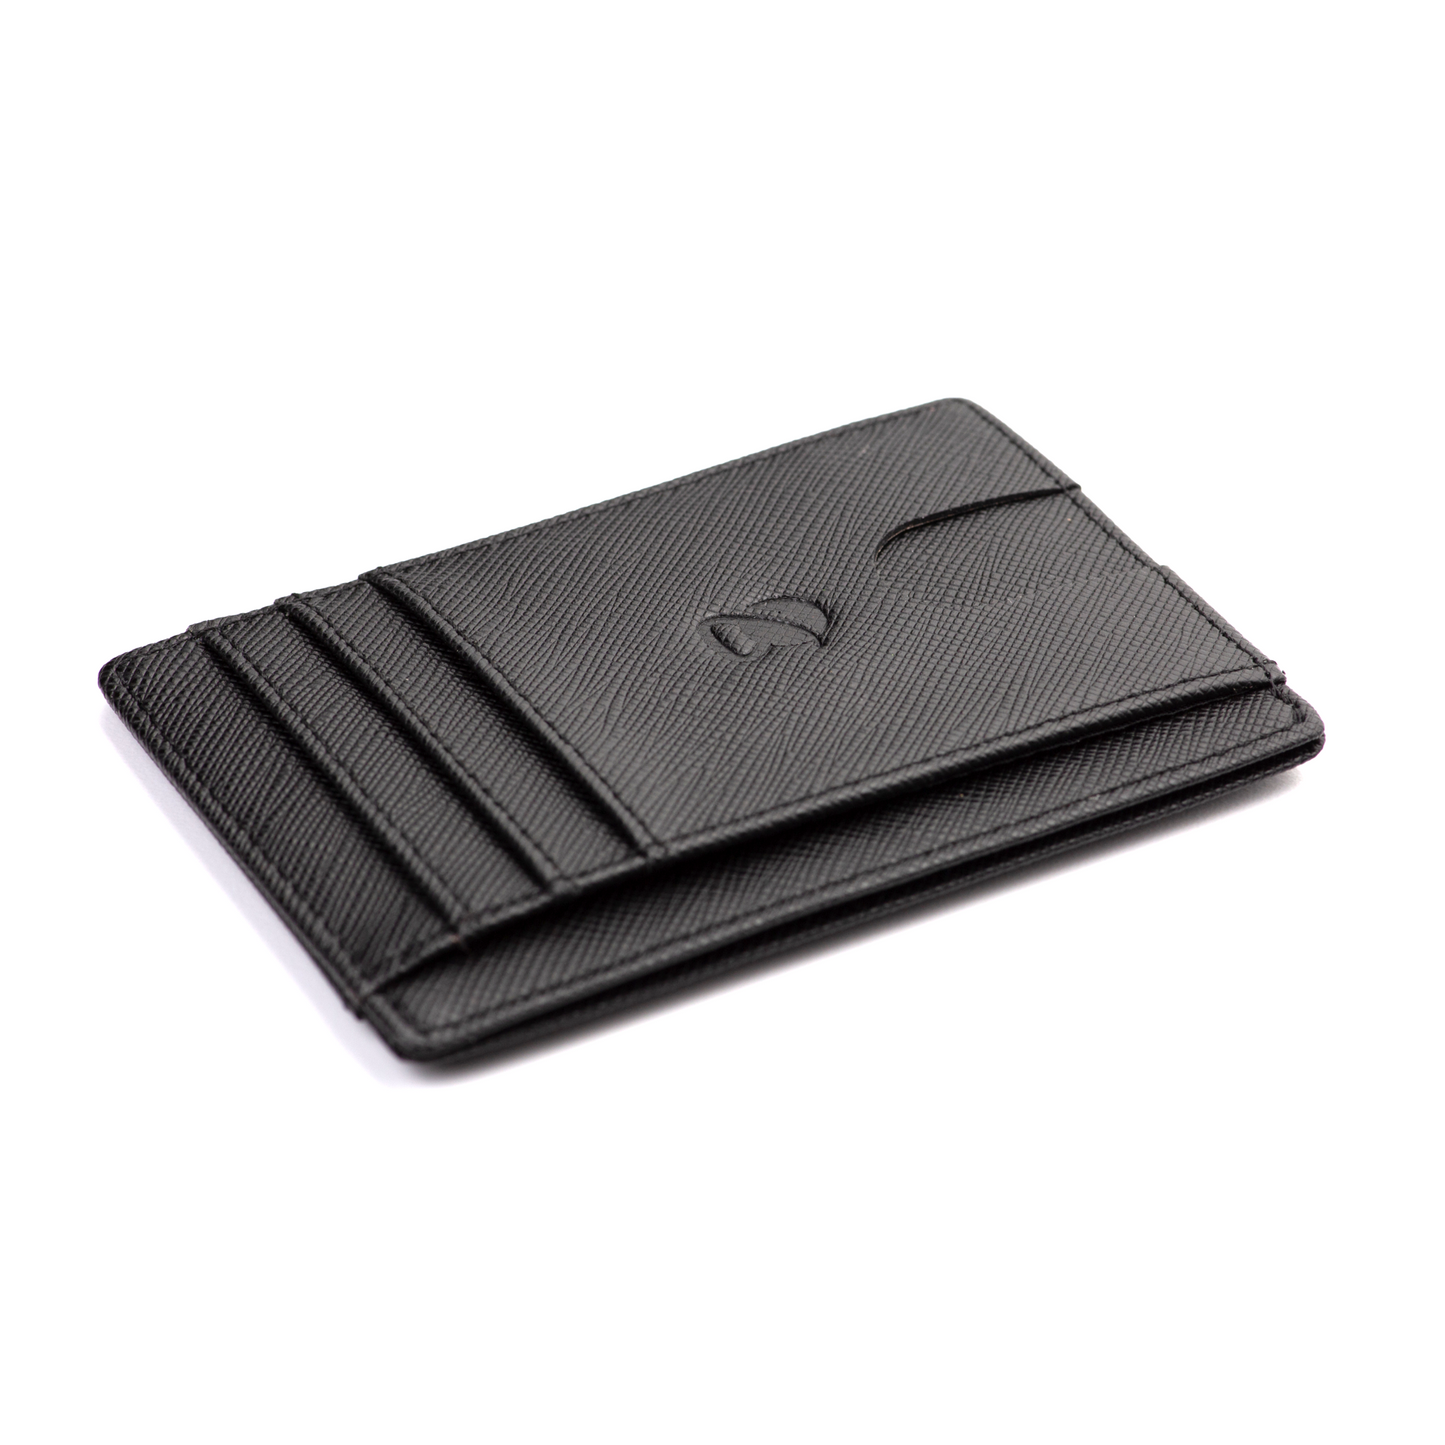 Slim Minimalist Leather Pocket Wallet-Travel